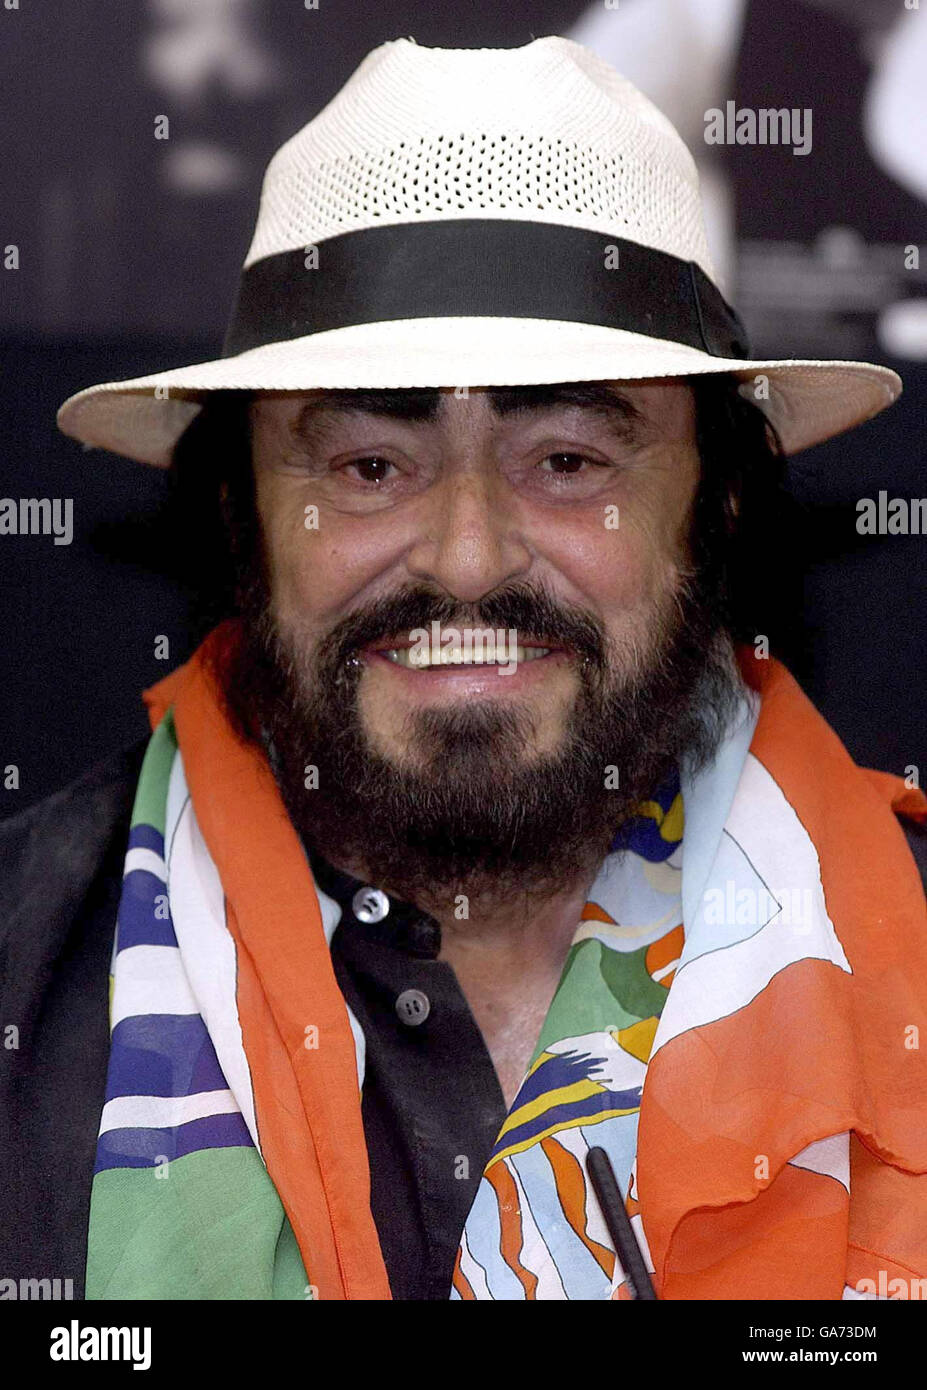 Immagine del file, datata 06-10-2003. La stella lirica Luciano Pavarotti, che è stata ricoverata in ospedale per osservazione nella sua città natale di Modena nel nord Italia. Foto Stock